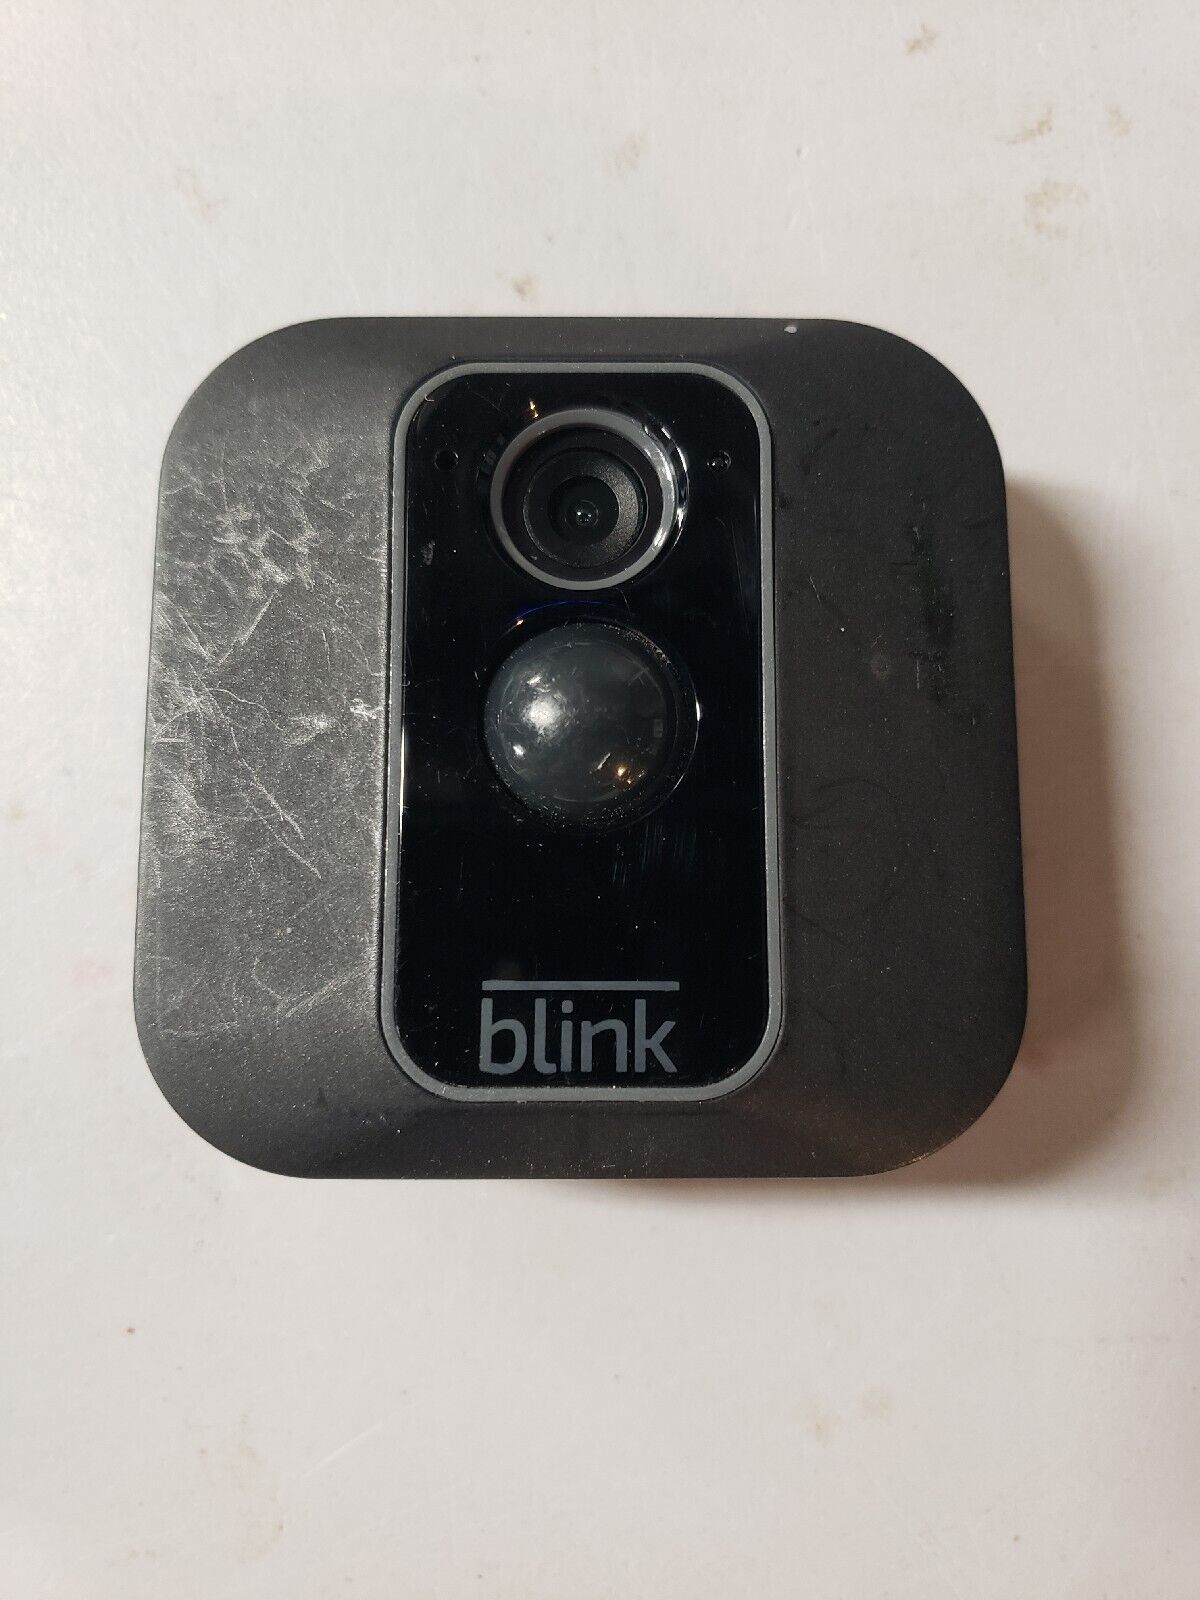 Blink XT2 Outdoor Indoor Smart Security Camera Only Locked